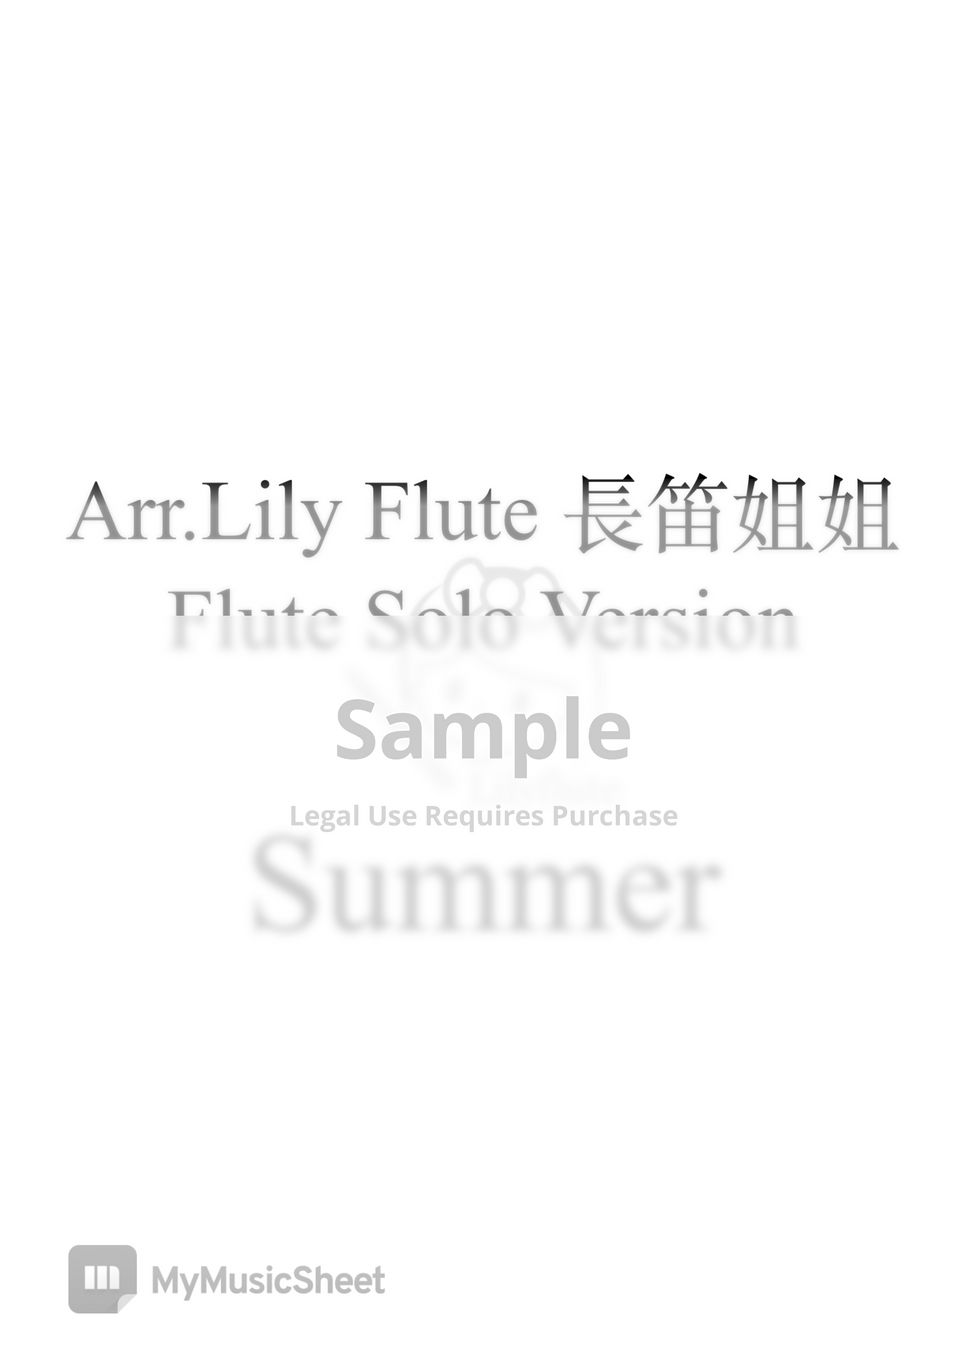 久石讓 - 菊次郎的夏天 (Solo Version) by Lily Flute 長笛姐姐